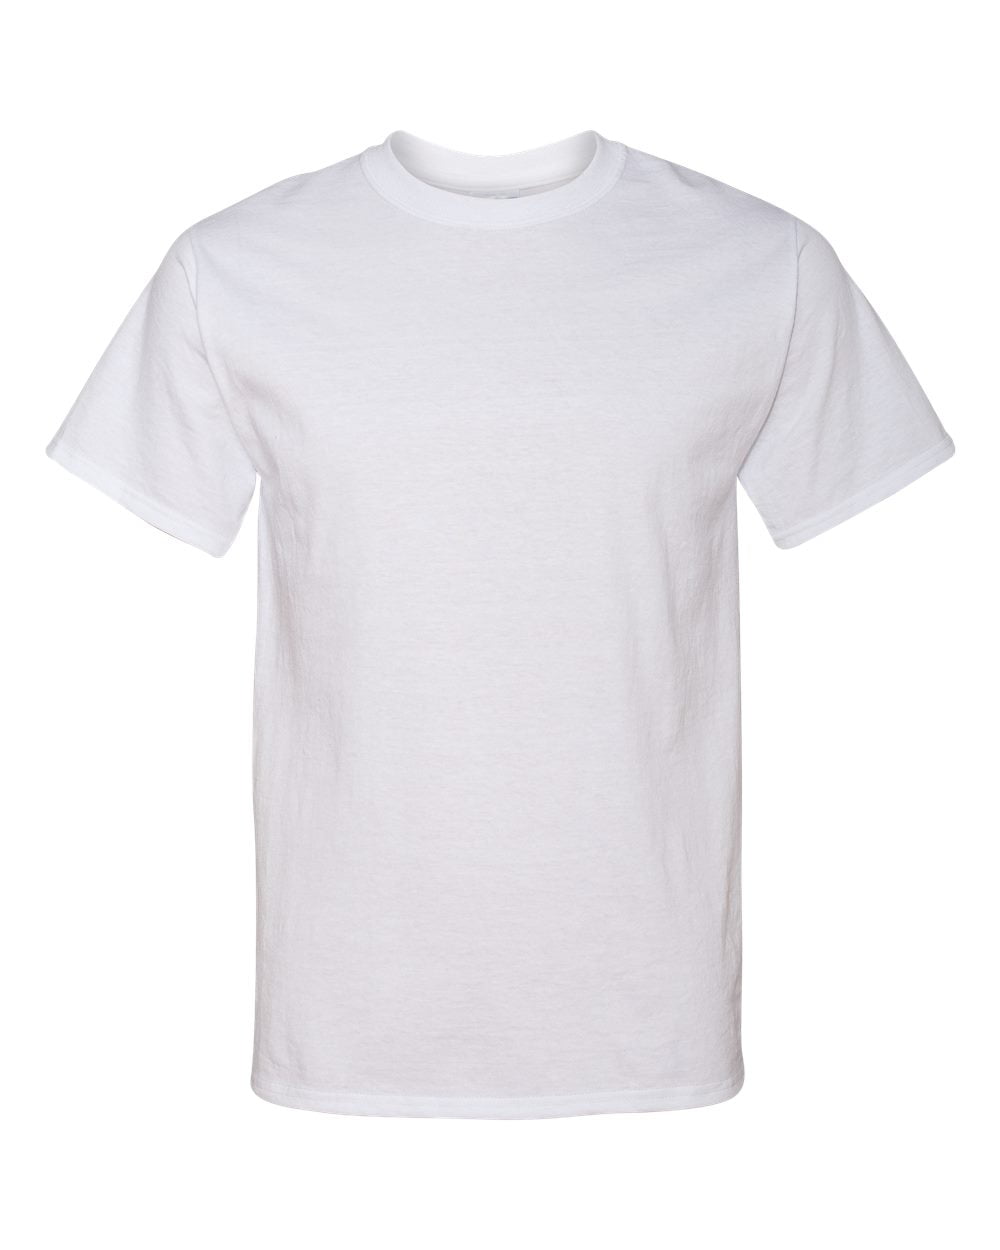 Jerzees Tall 5.6 oz. 50/50 Heavyweight Blend T-Shirt (29MT) White, XLT ...